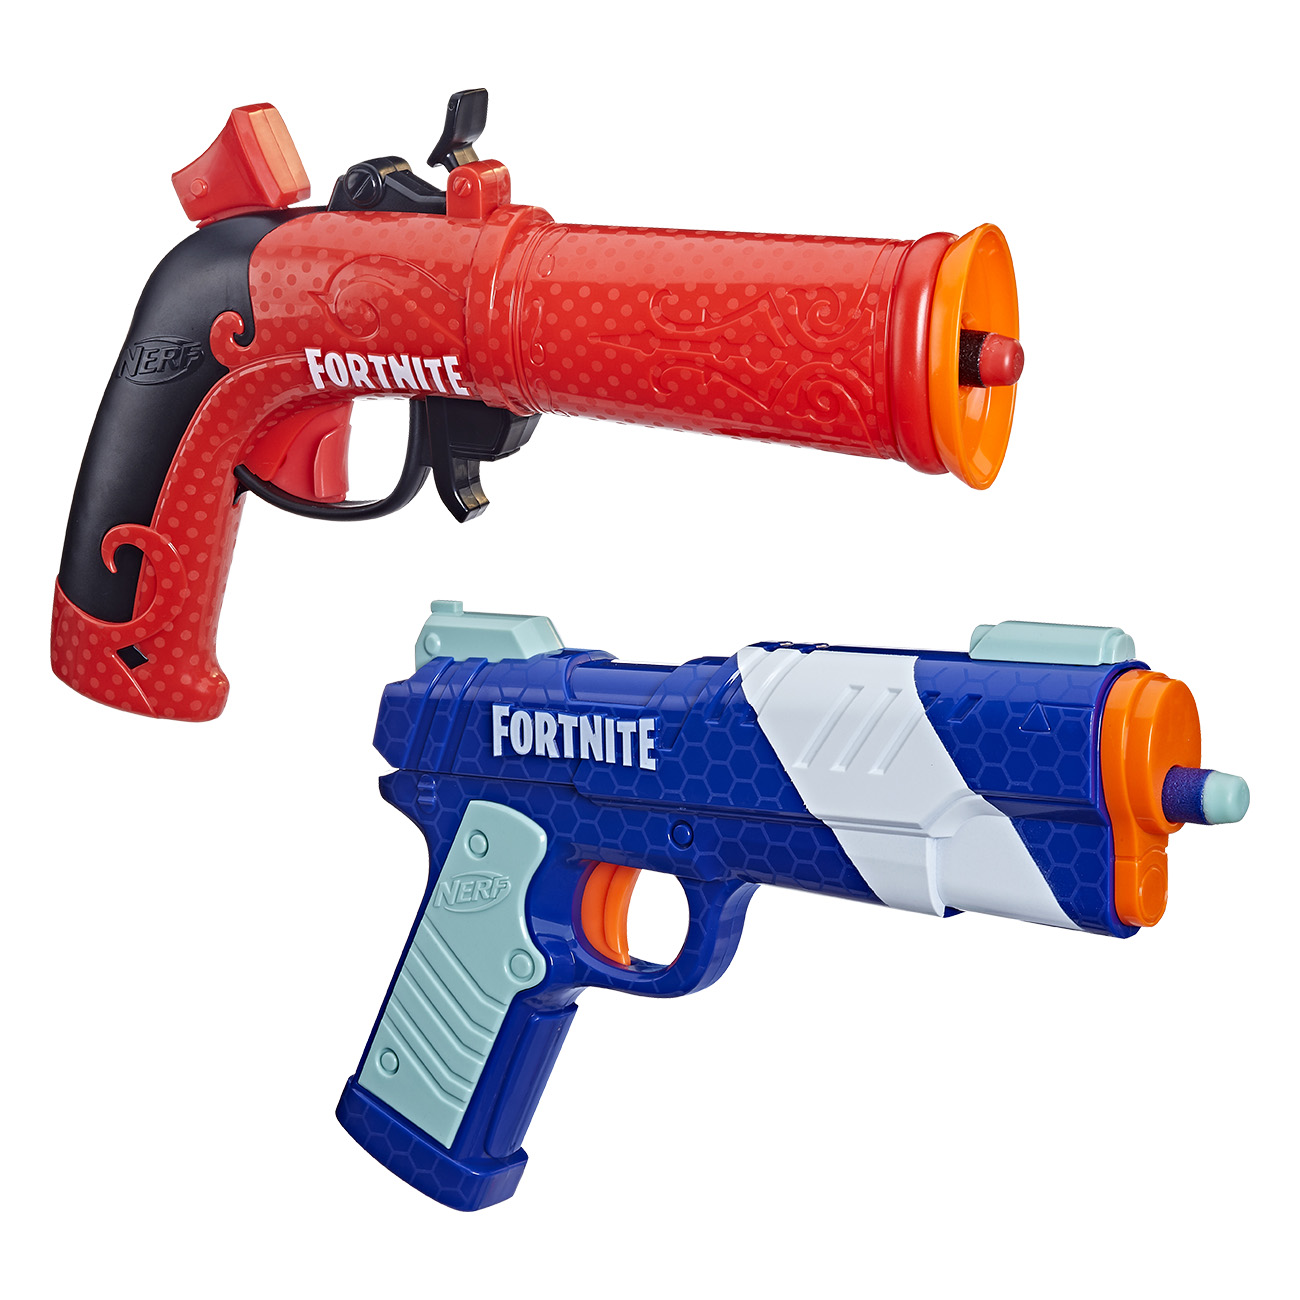 Nerf Fortnite Dual Pack in blau und orange | Blaster | Fortnite Design | Elite Darts | Flint-Knock Blaster mit Spannhebel | LP Blaster von Nerf